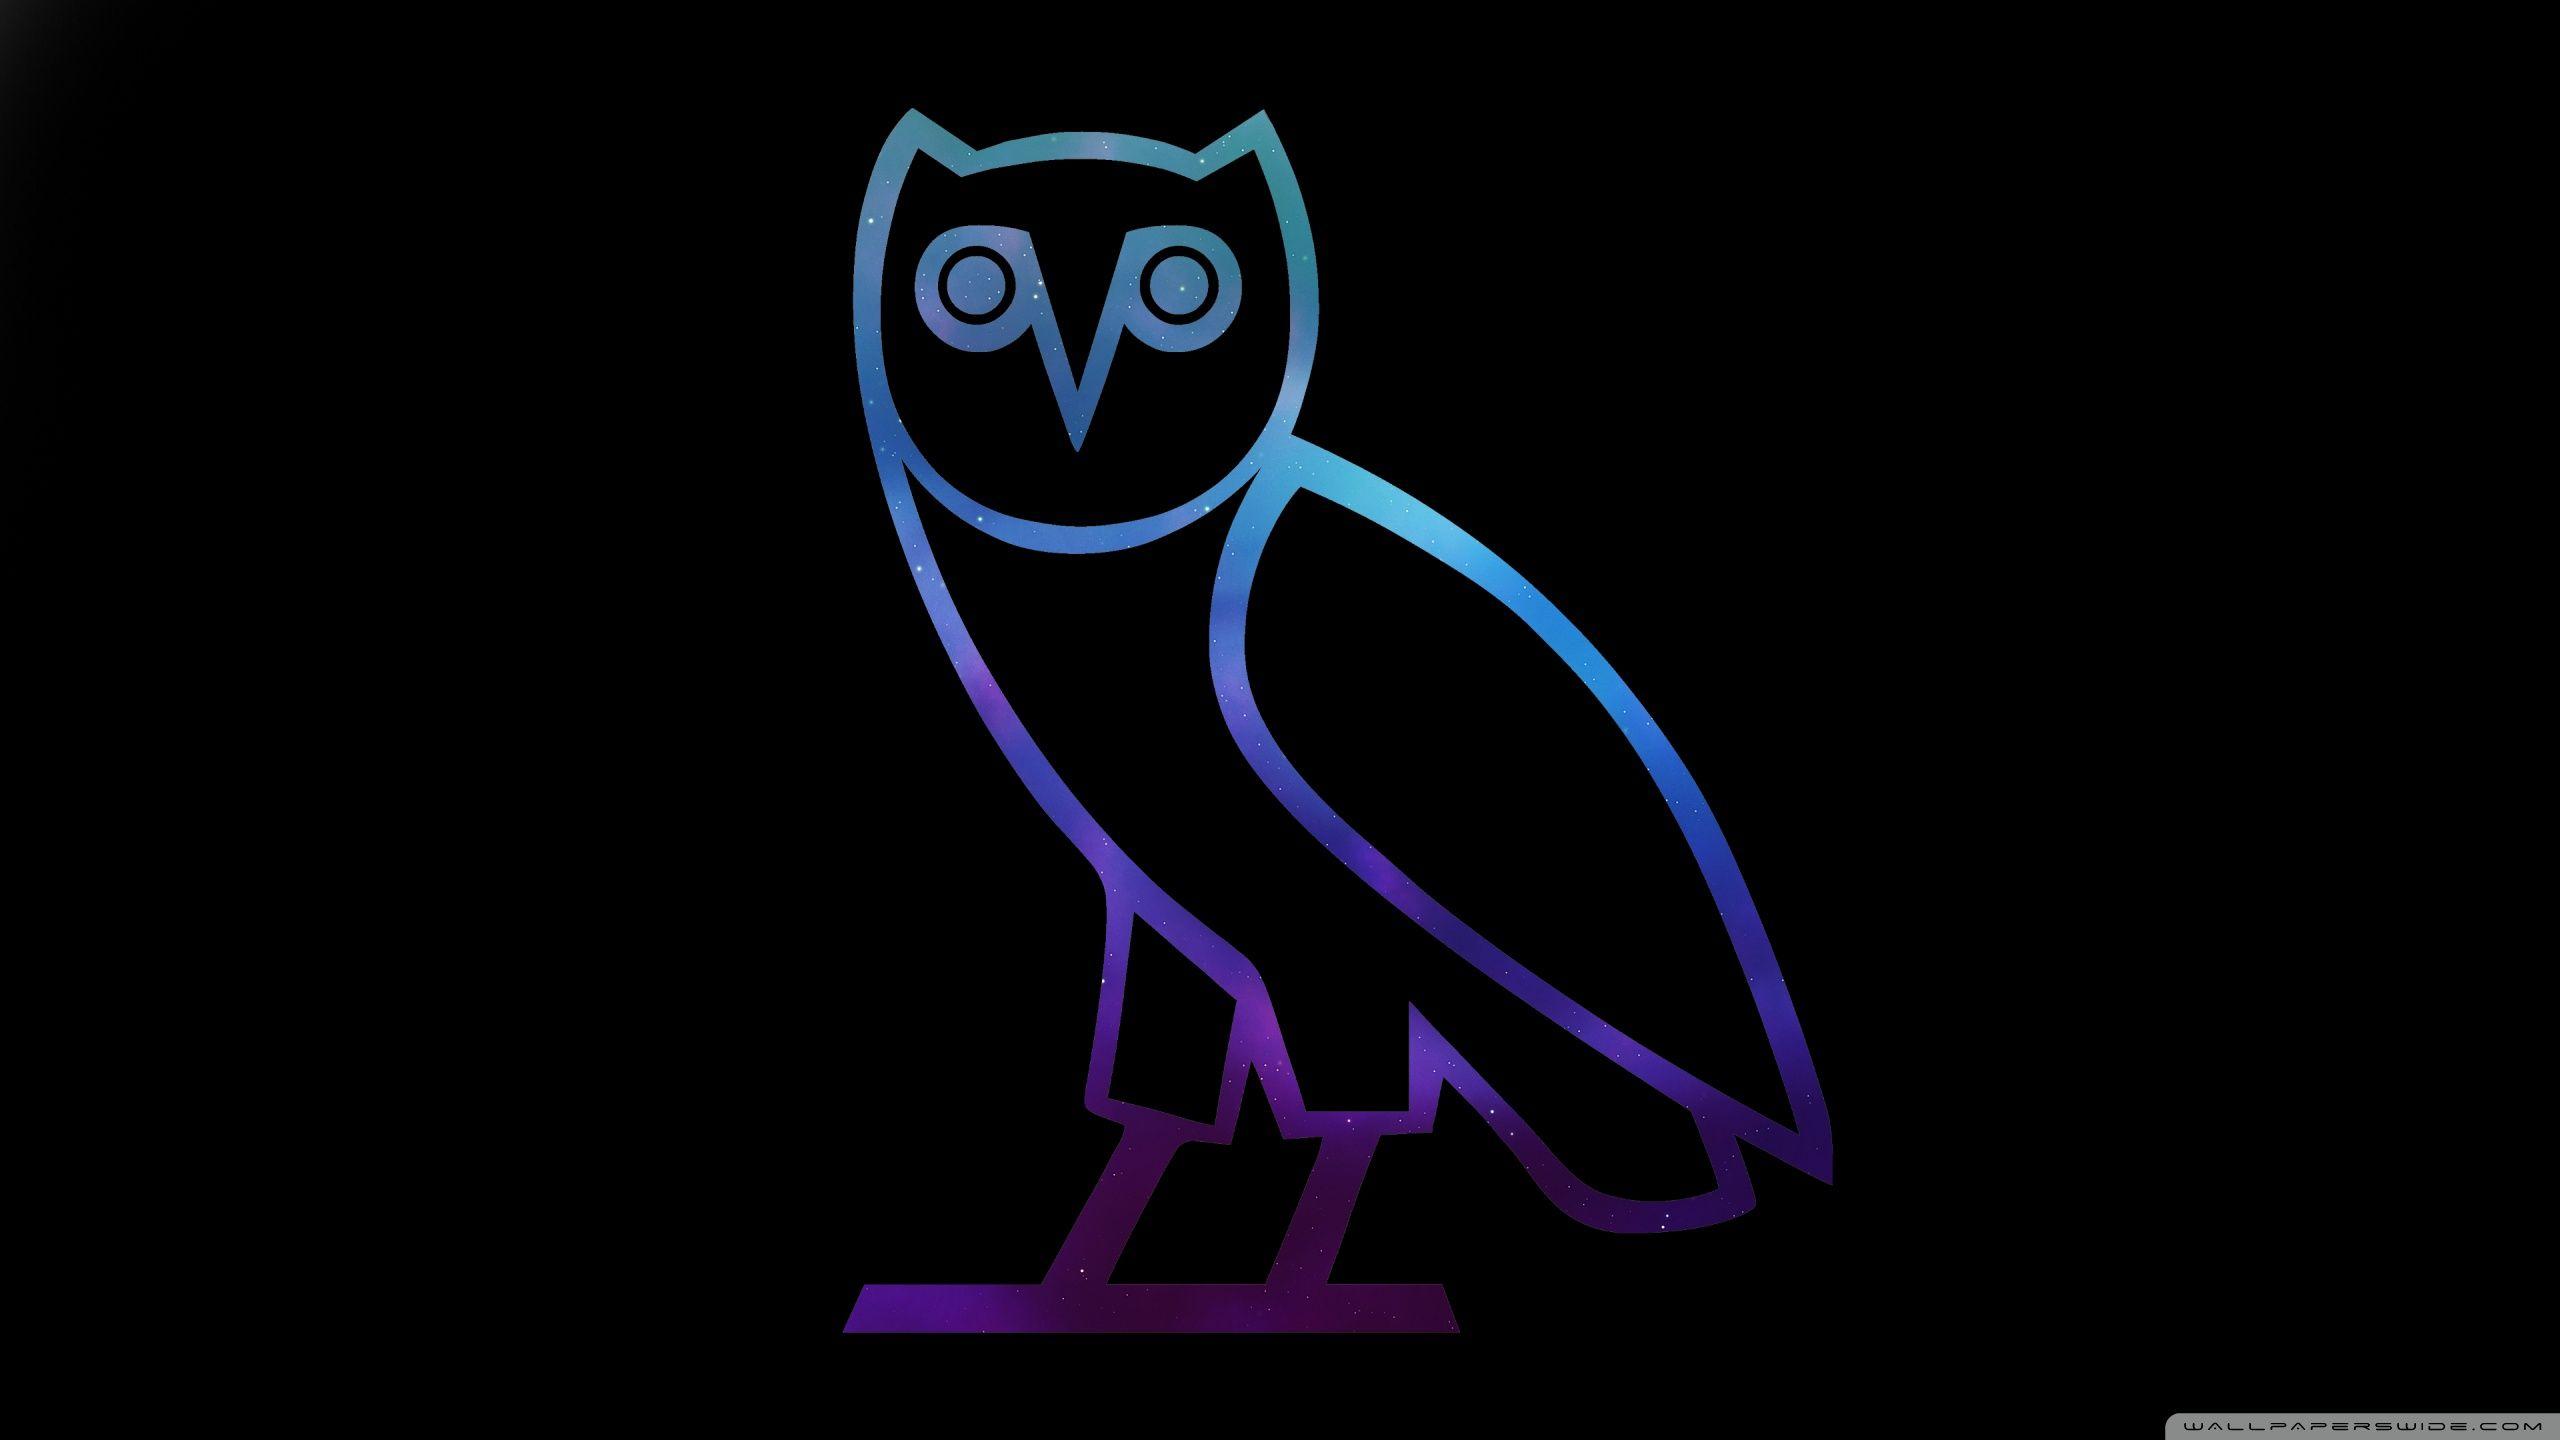 Drake Owl Ovo HD desktop wallpaper, Widescreen, Fullscreen